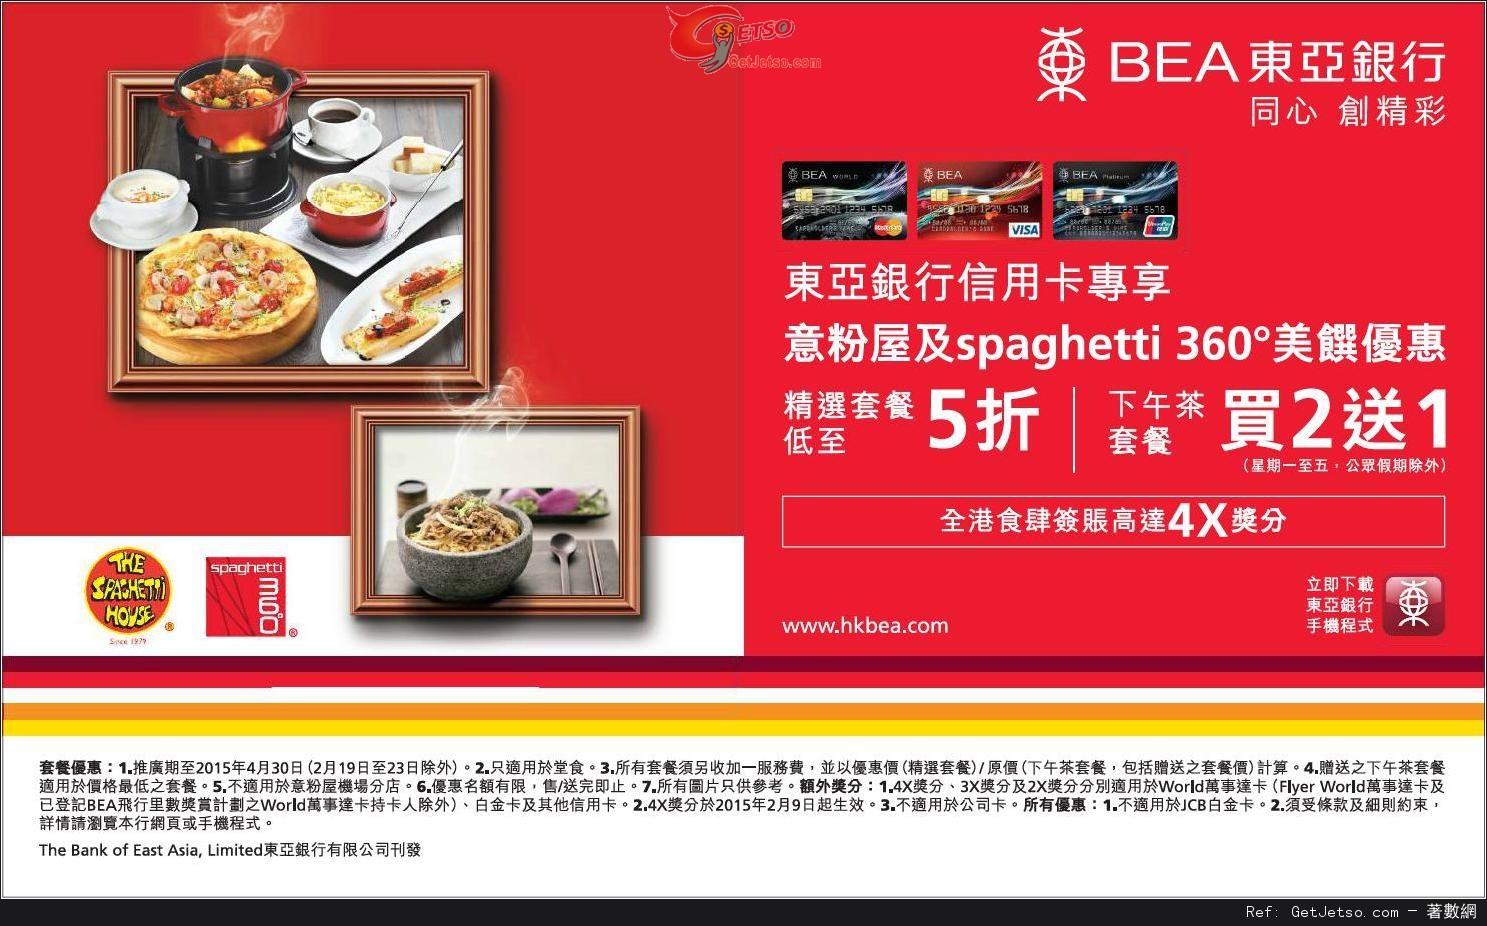 東亞信用卡享意粉屋及spaghetti 360°低至半價美饌優惠(至15年4月30日)圖片1